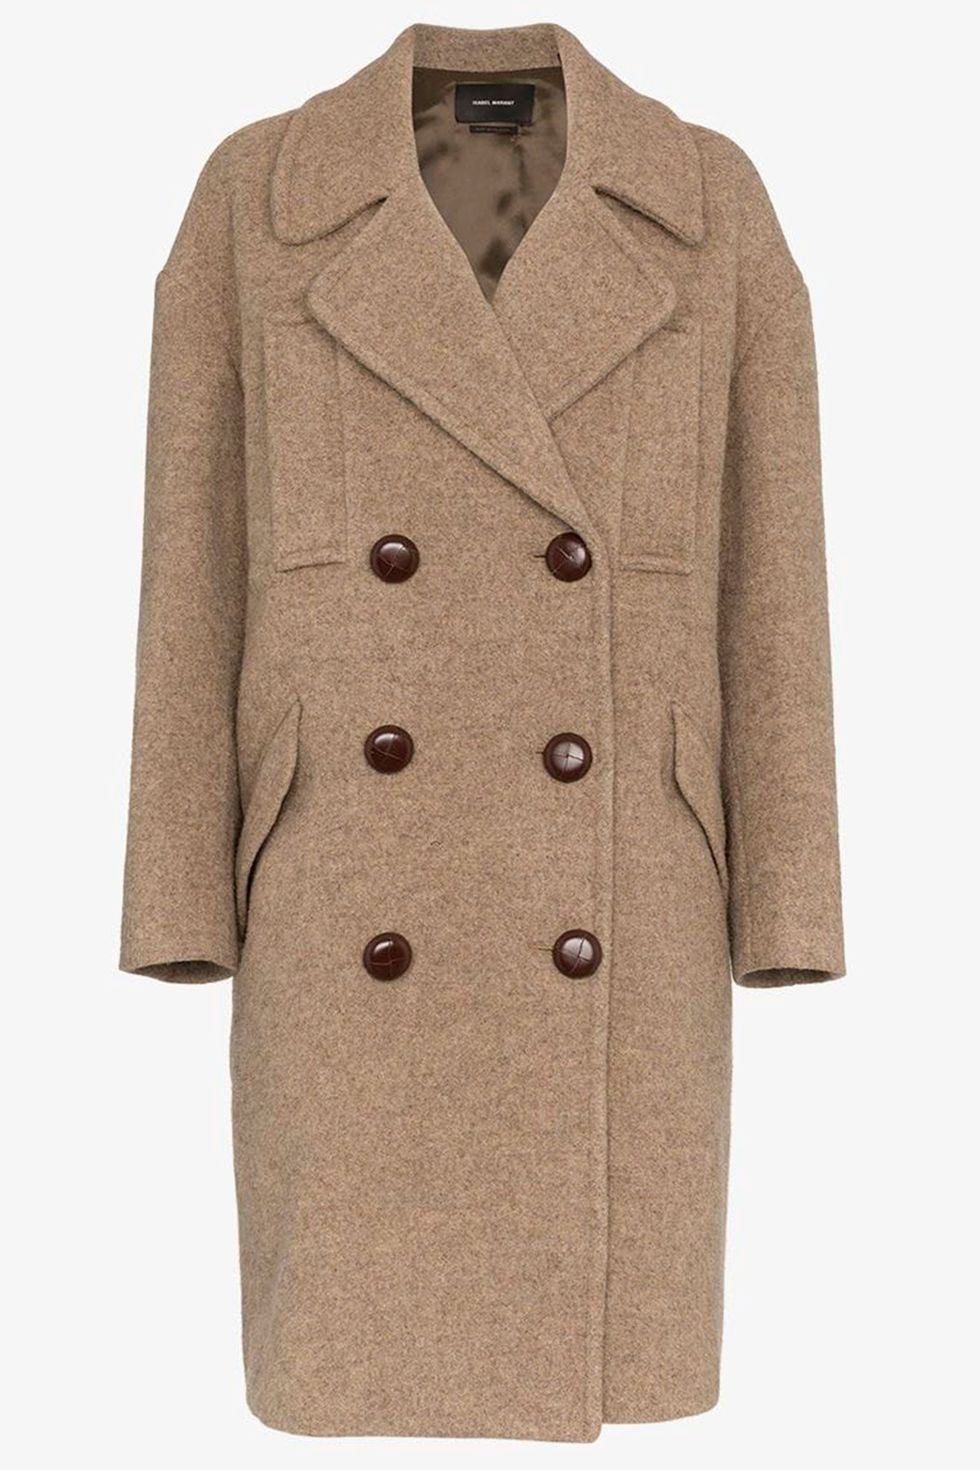 Clothing, Coat, Overcoat, Outerwear, Trench coat, Beige, Sleeve, Collar, Jacket, Frock coat, 